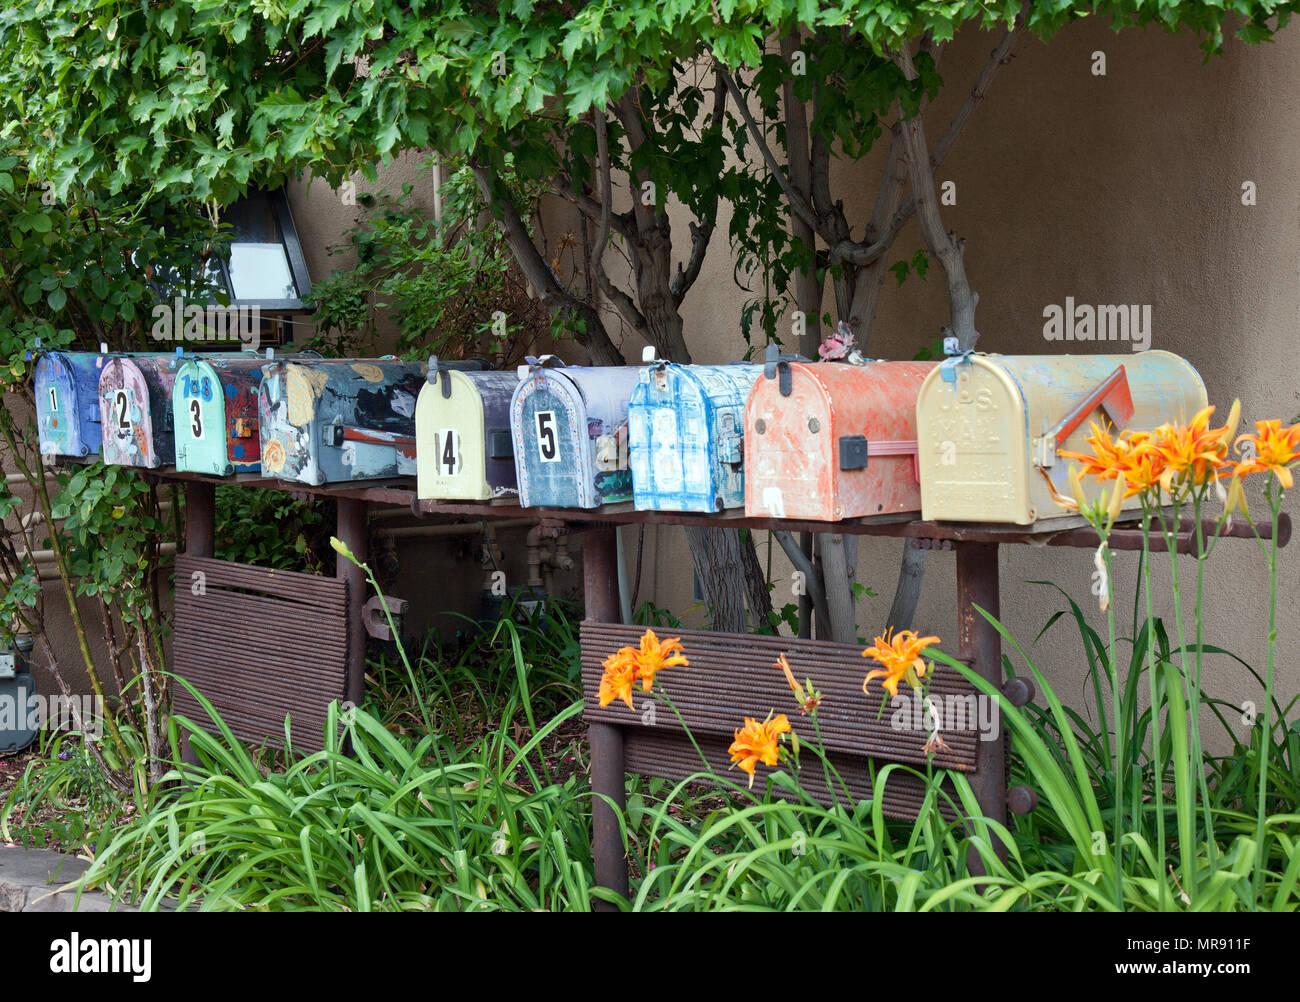 Buzones decorados fotografías e imágenes de alta resolución - Alamy